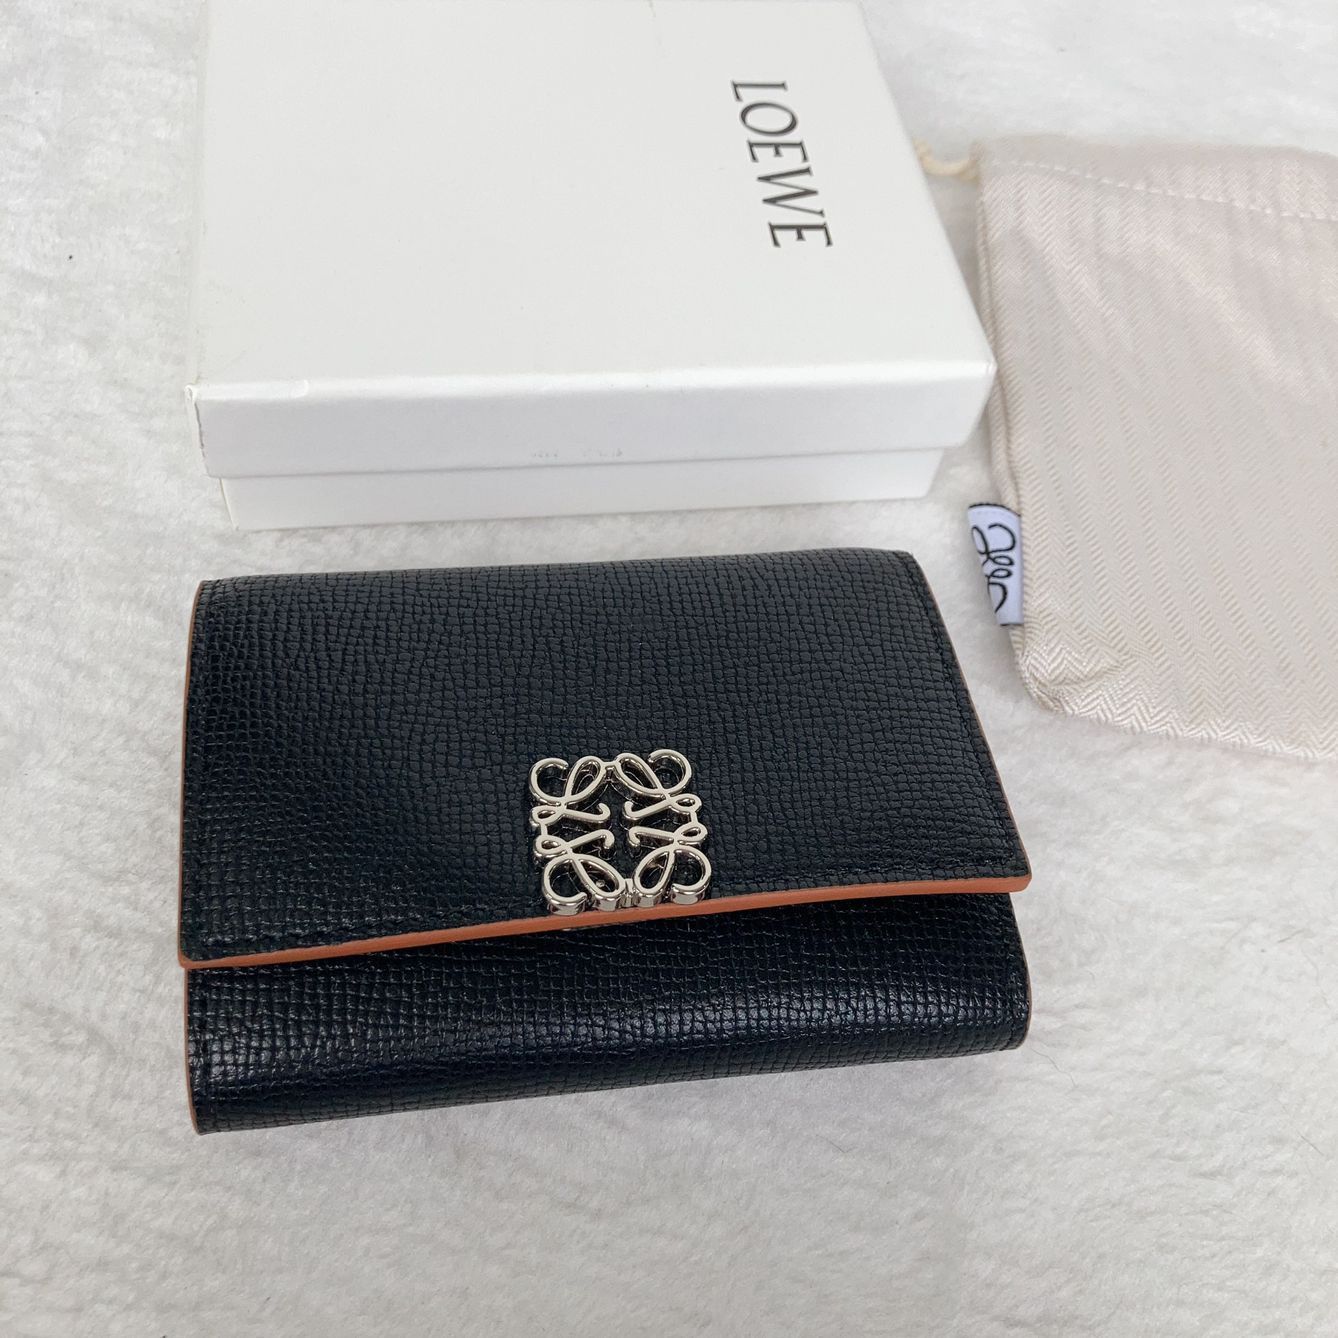 販売する✨新品 未使用 LOEWE 三つ折り 財布 ブラック 財布